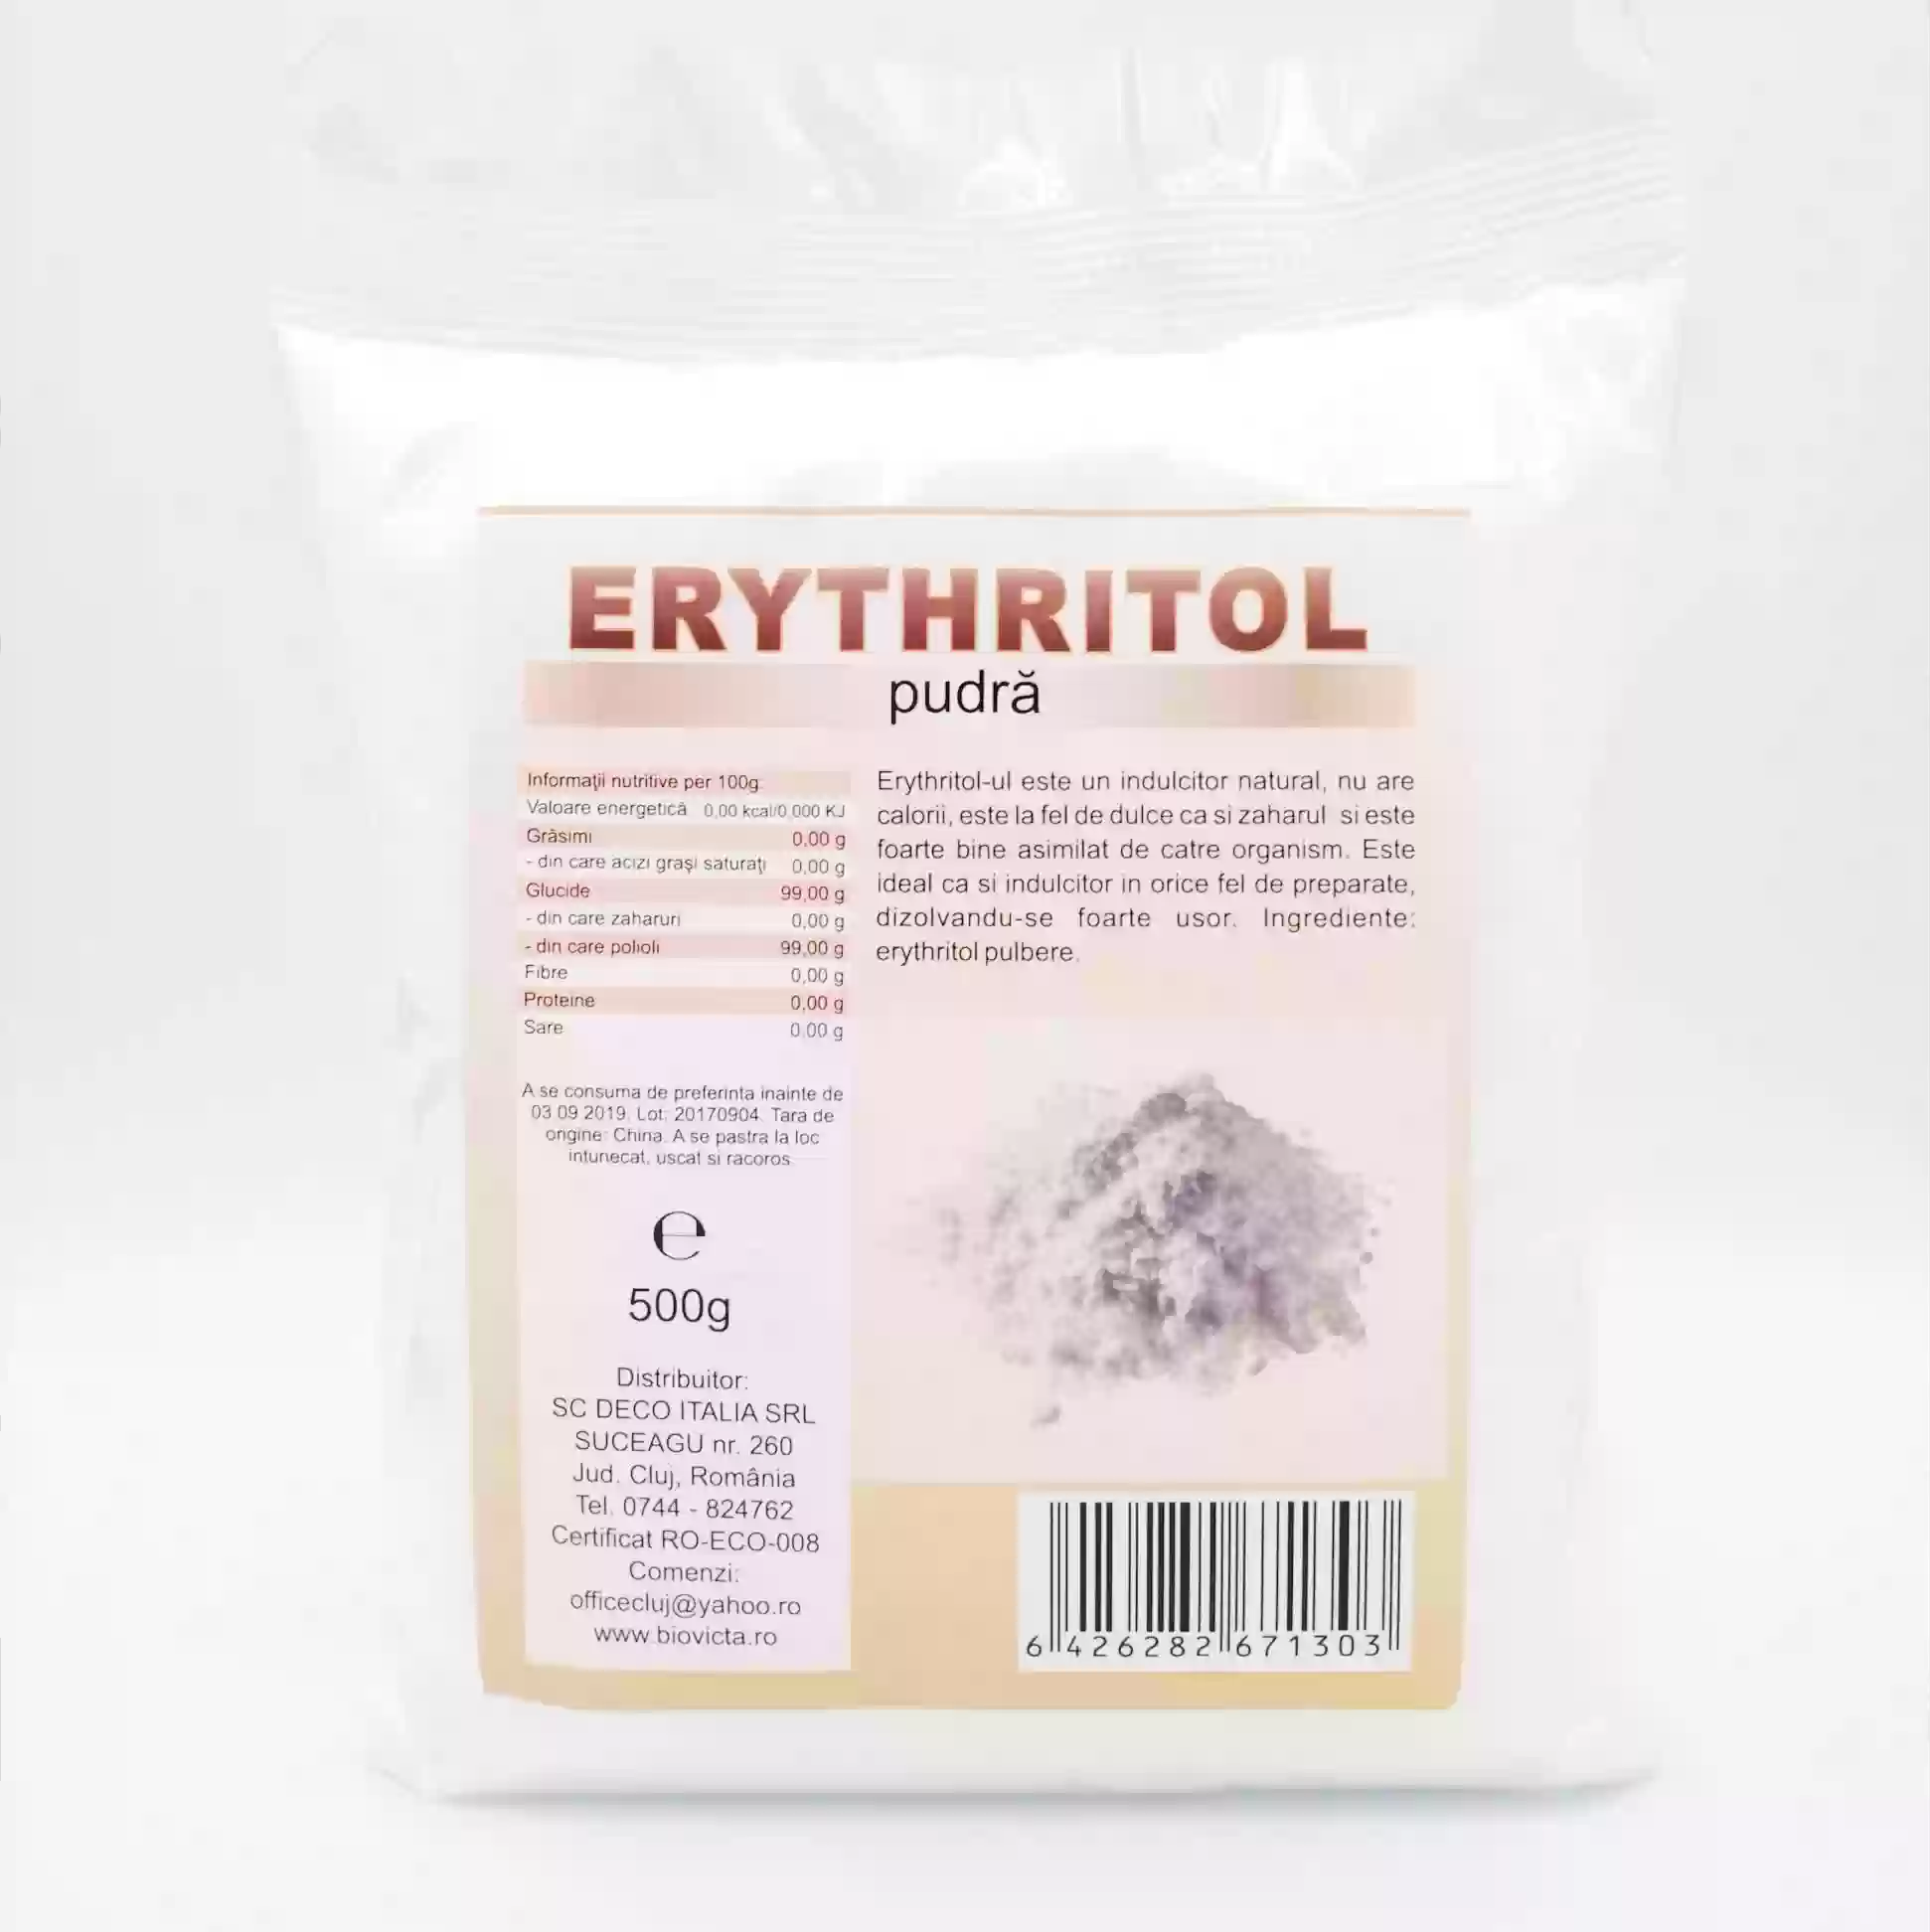 Erythritol pudra 500g, Deco Italia